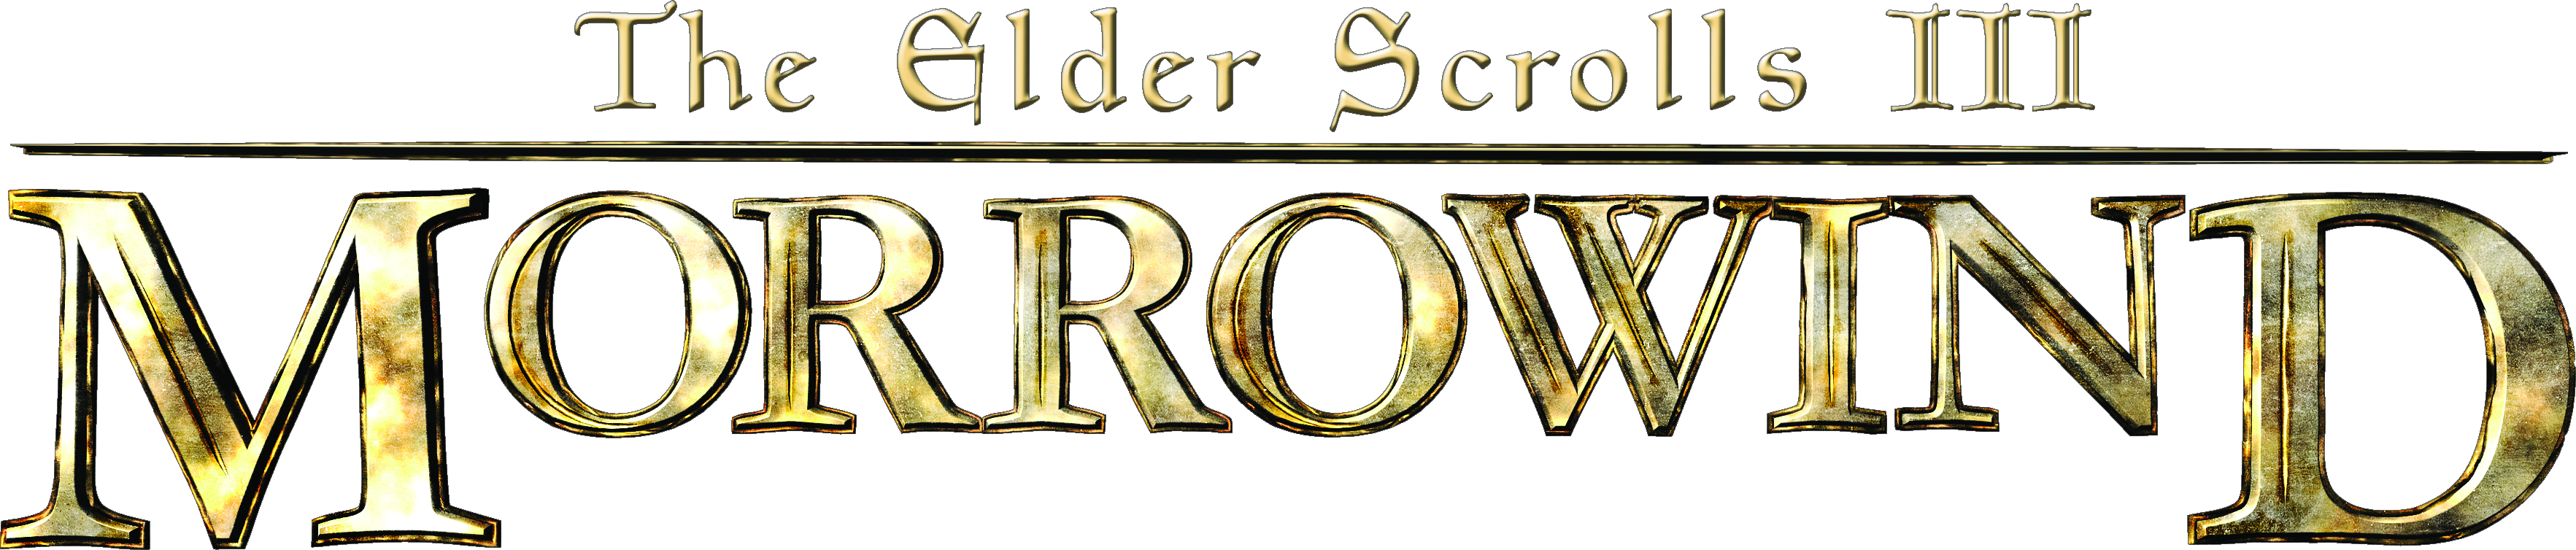 the elder scrolls 3 morrowind